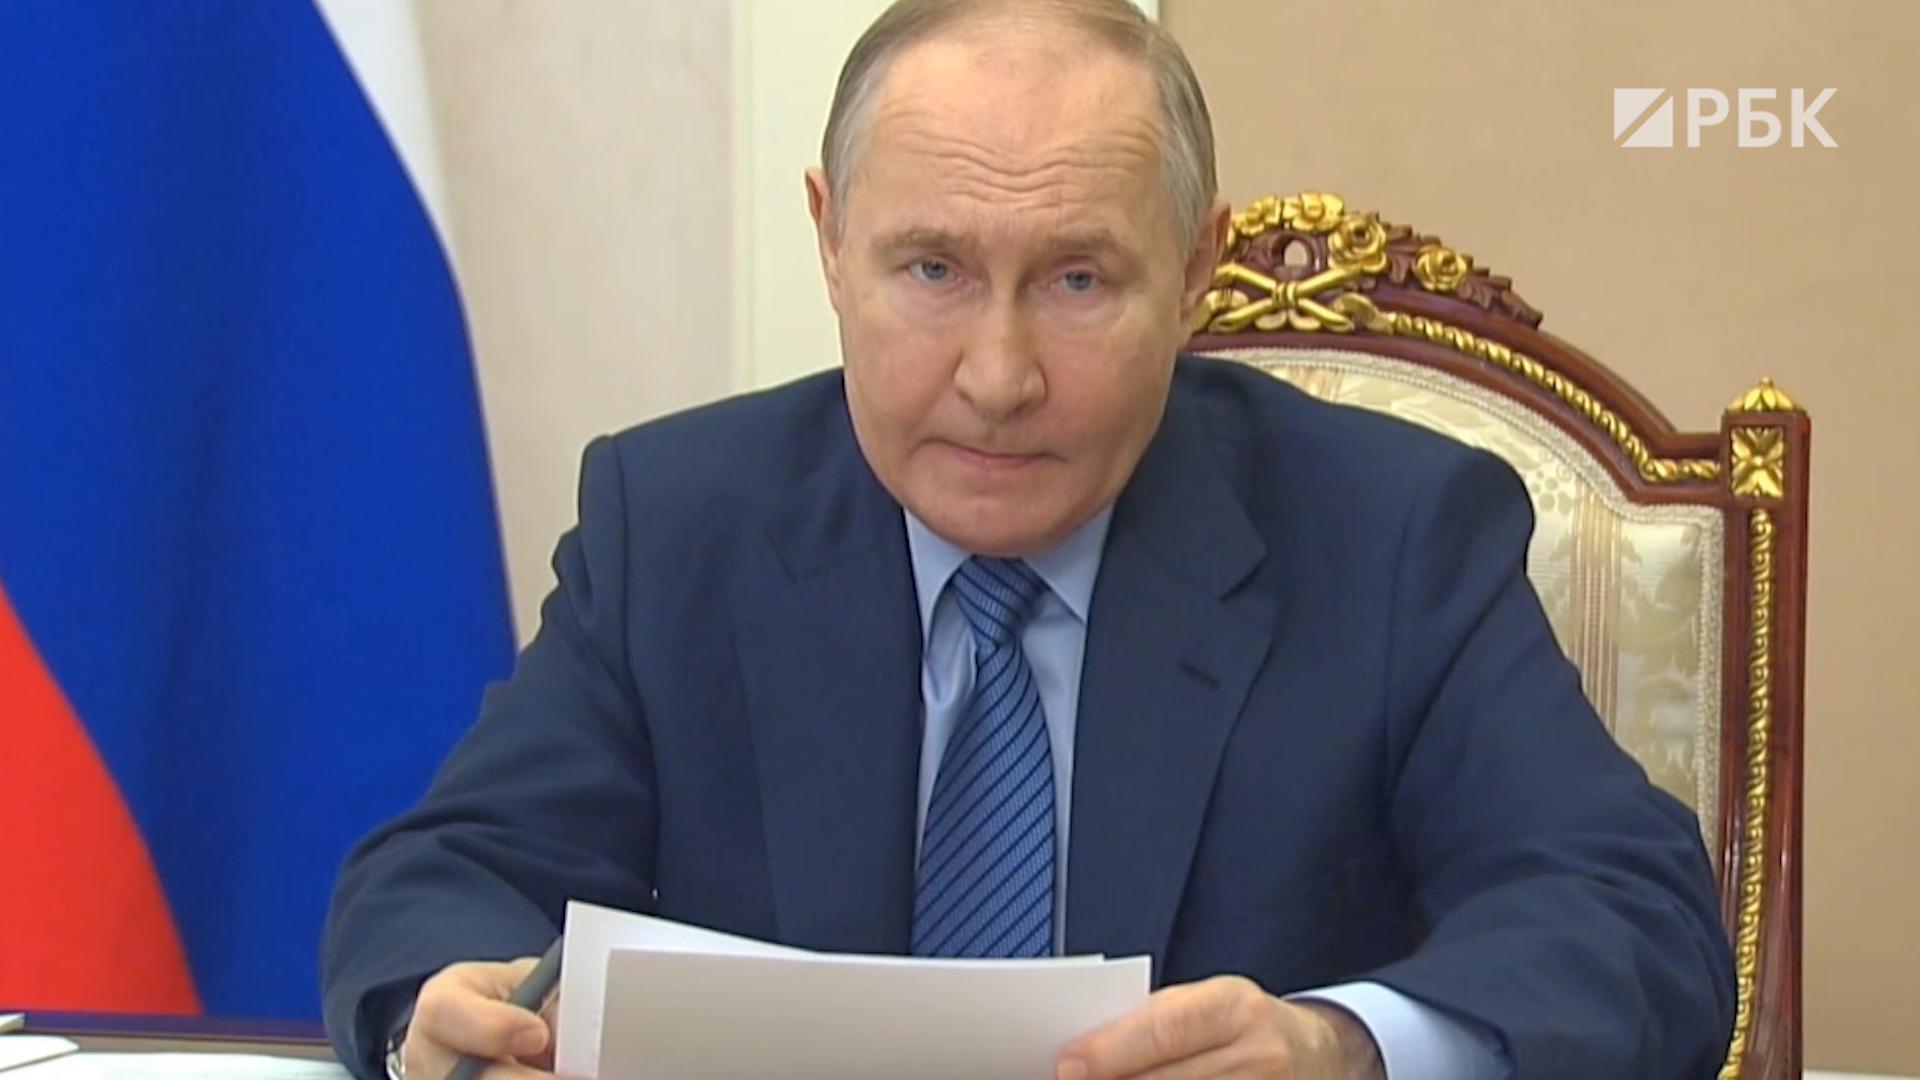 «Че так мало-то?»: кадры с критикой Путина в адрес министра МЧС